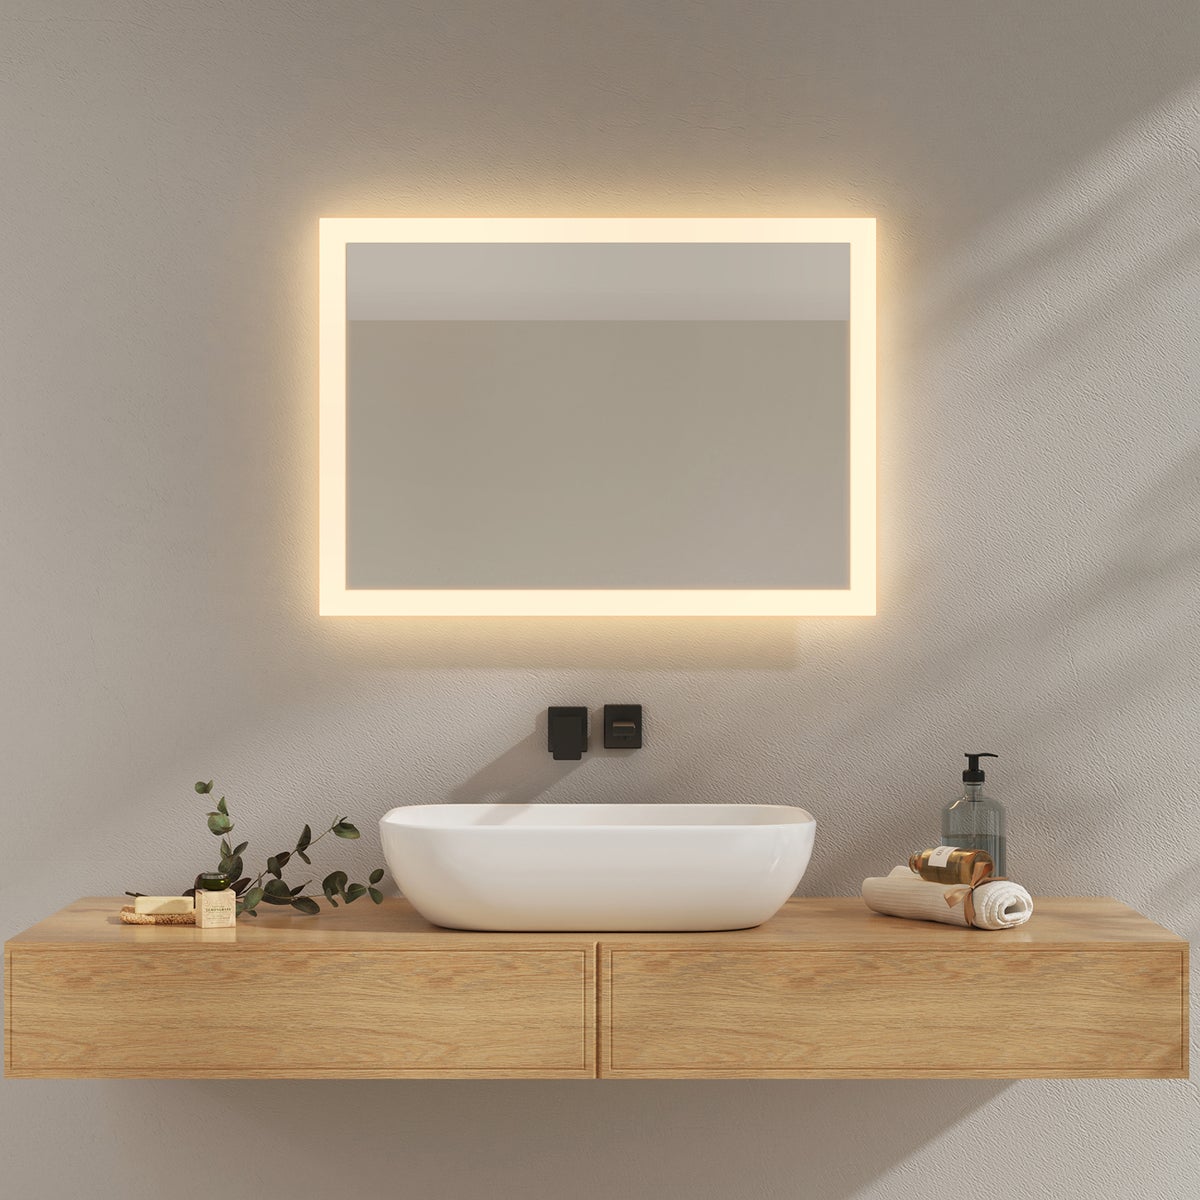 EMKE Badspiegel mit Beleuchtung, 70x50cm, Kaltweißes Licht